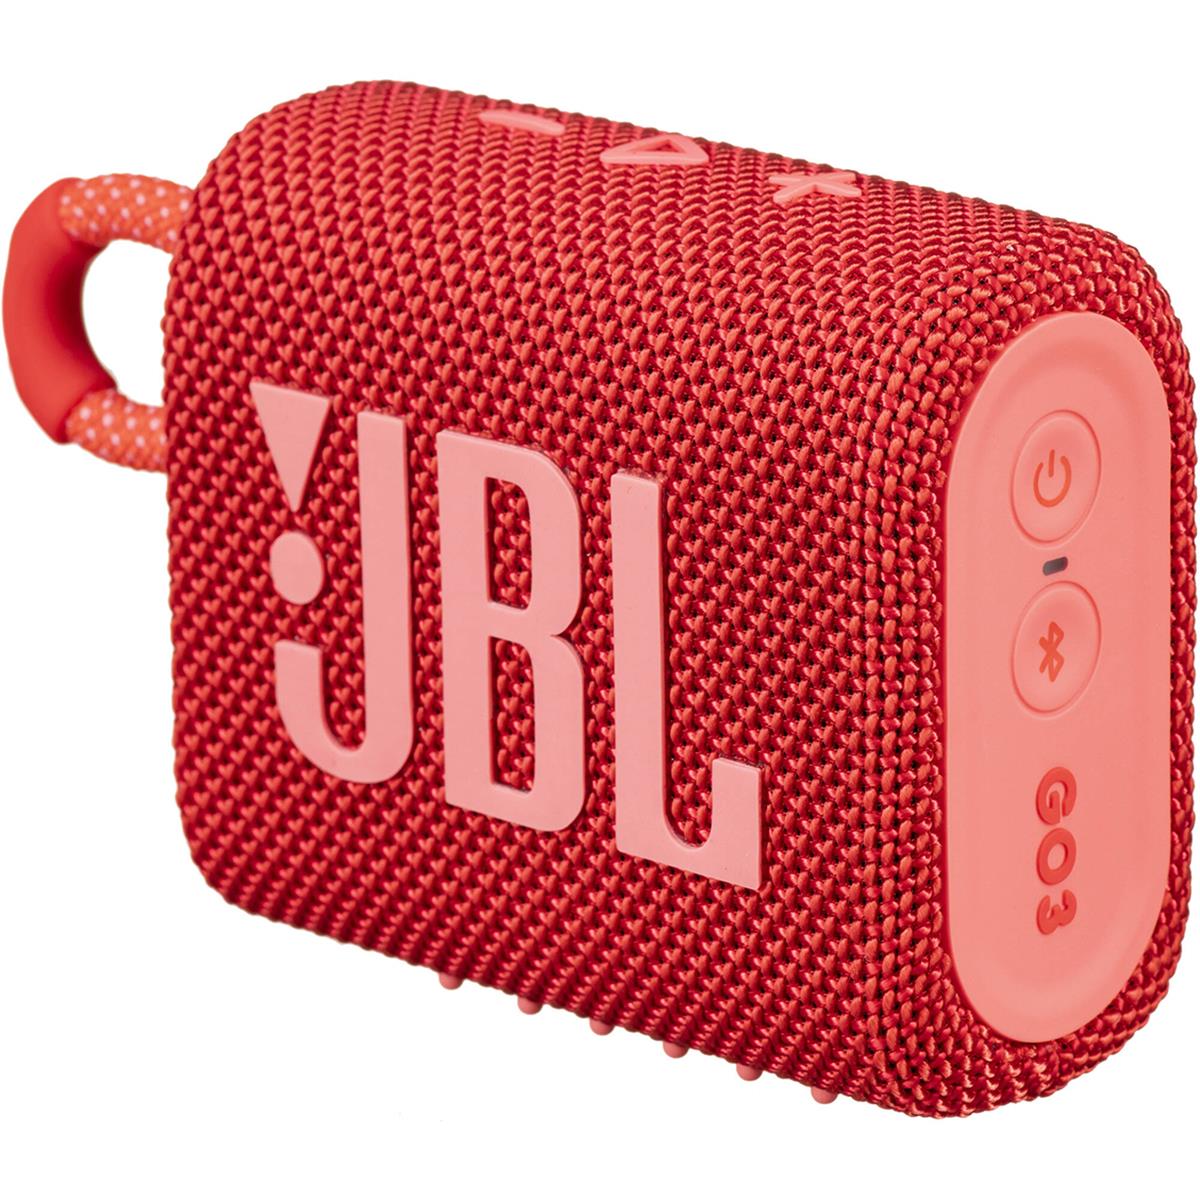 Image of JBL Go 3 Waterproof Portable Bluetooth Speaker Red